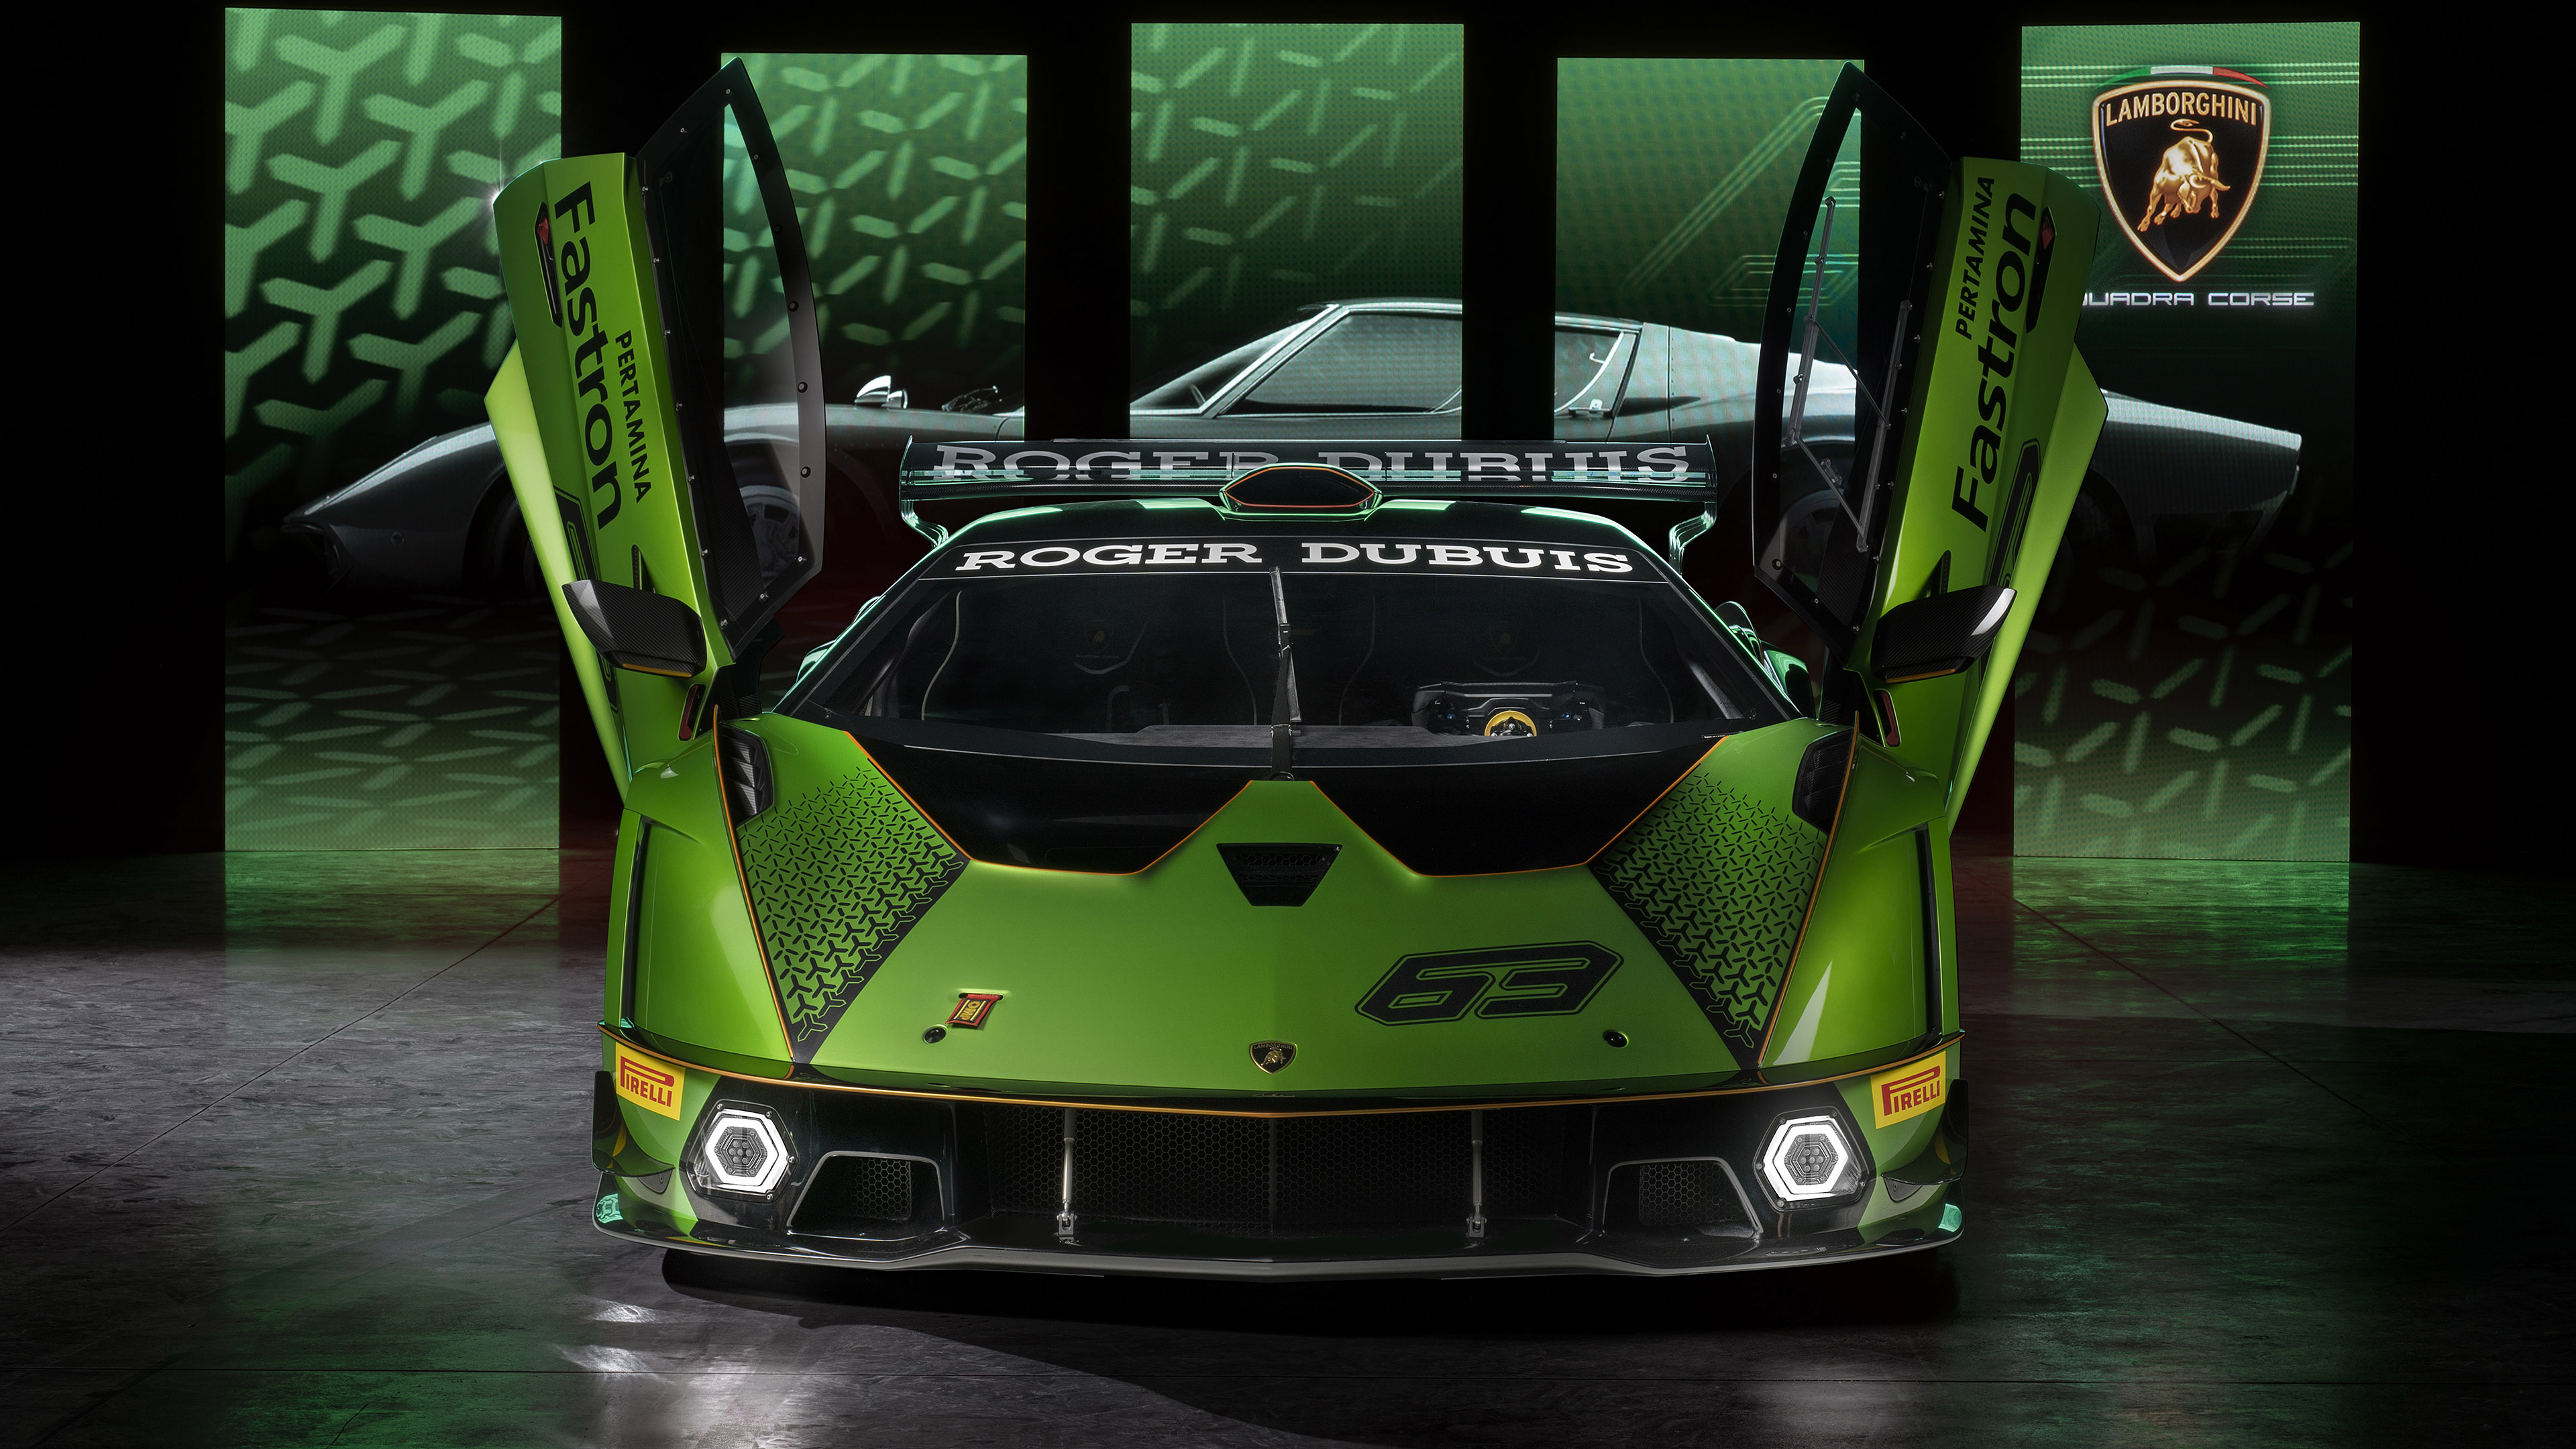  2021 Lamborghini Essenza SCV12 Wallpaper.